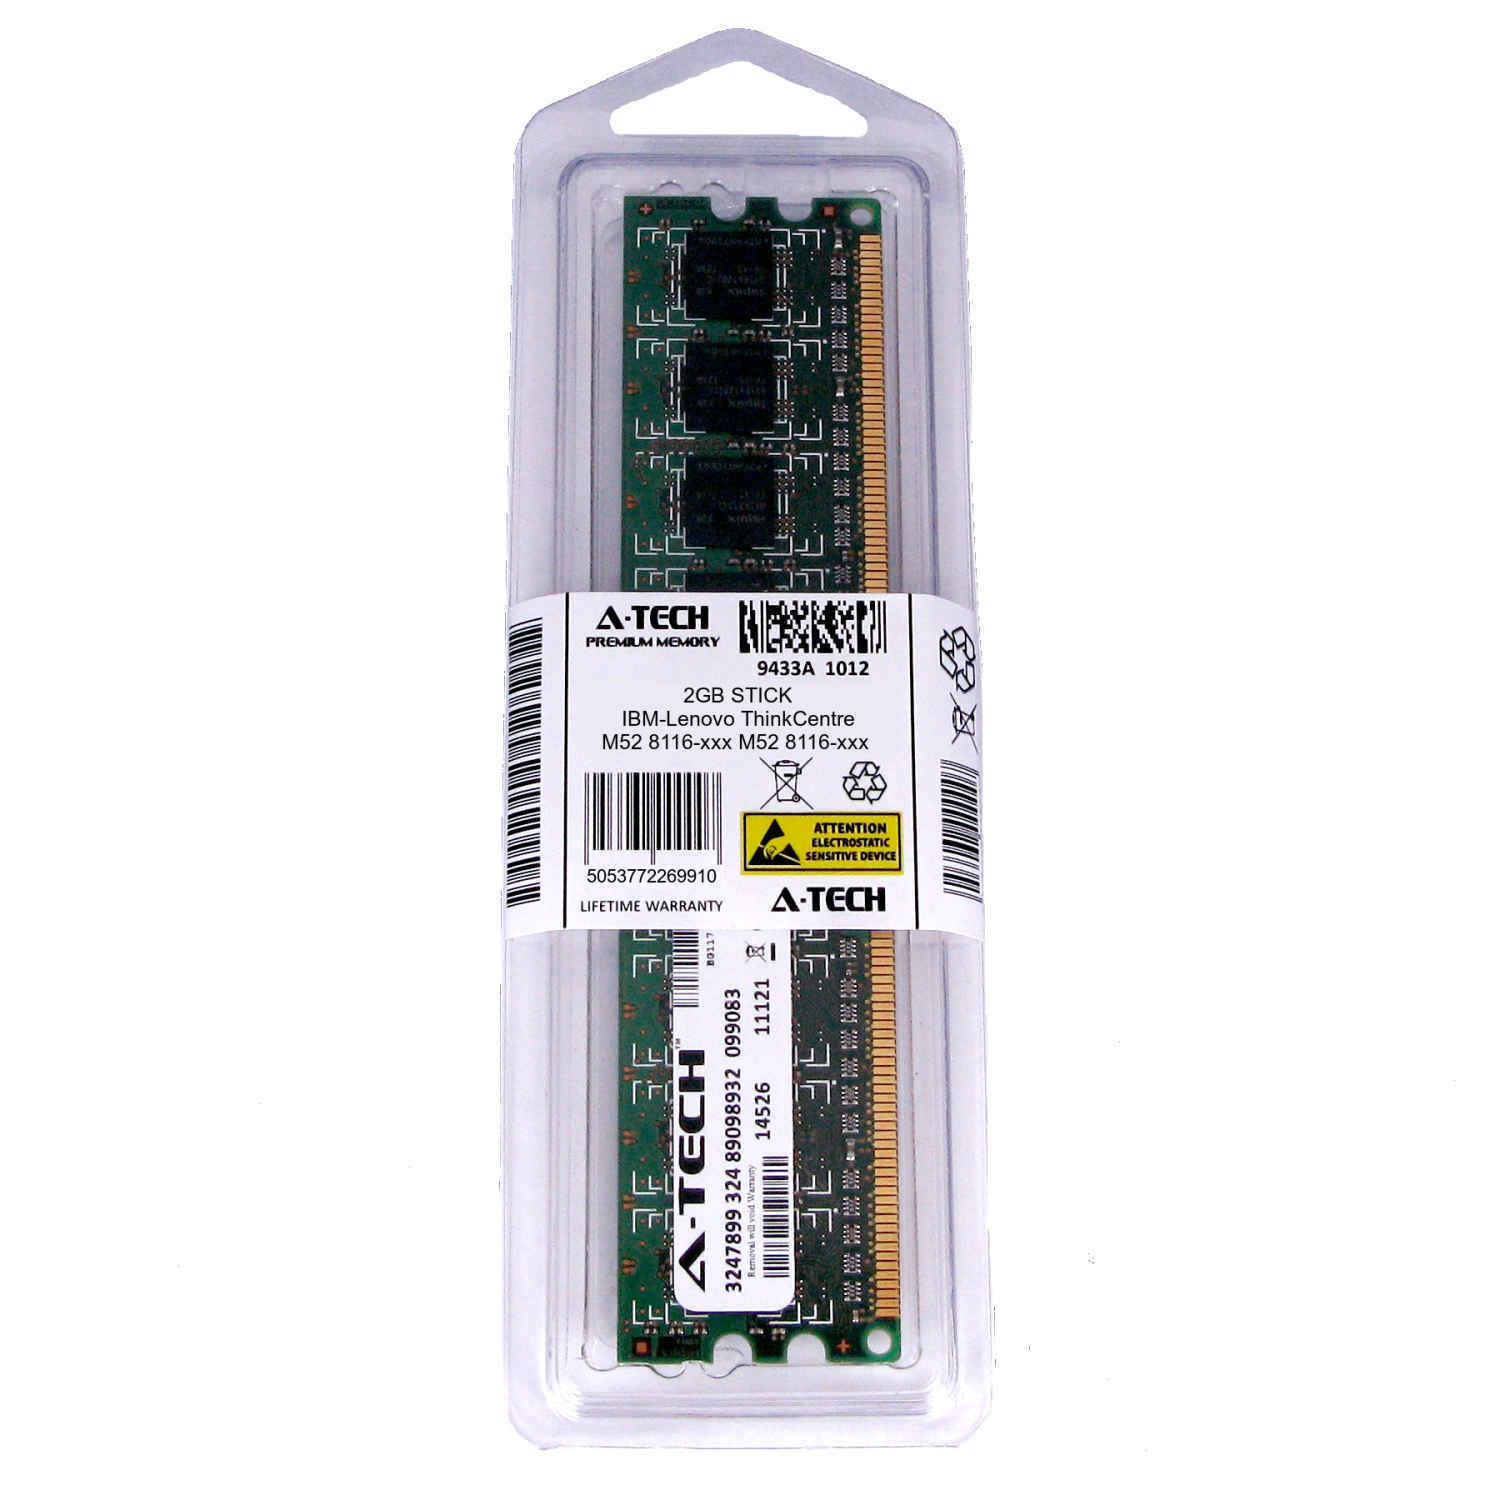 2GB DIMM IBM-Lenovo ThinkCentre M52 8116-xxx 8215-xxx 8216-xxx Ram Memory